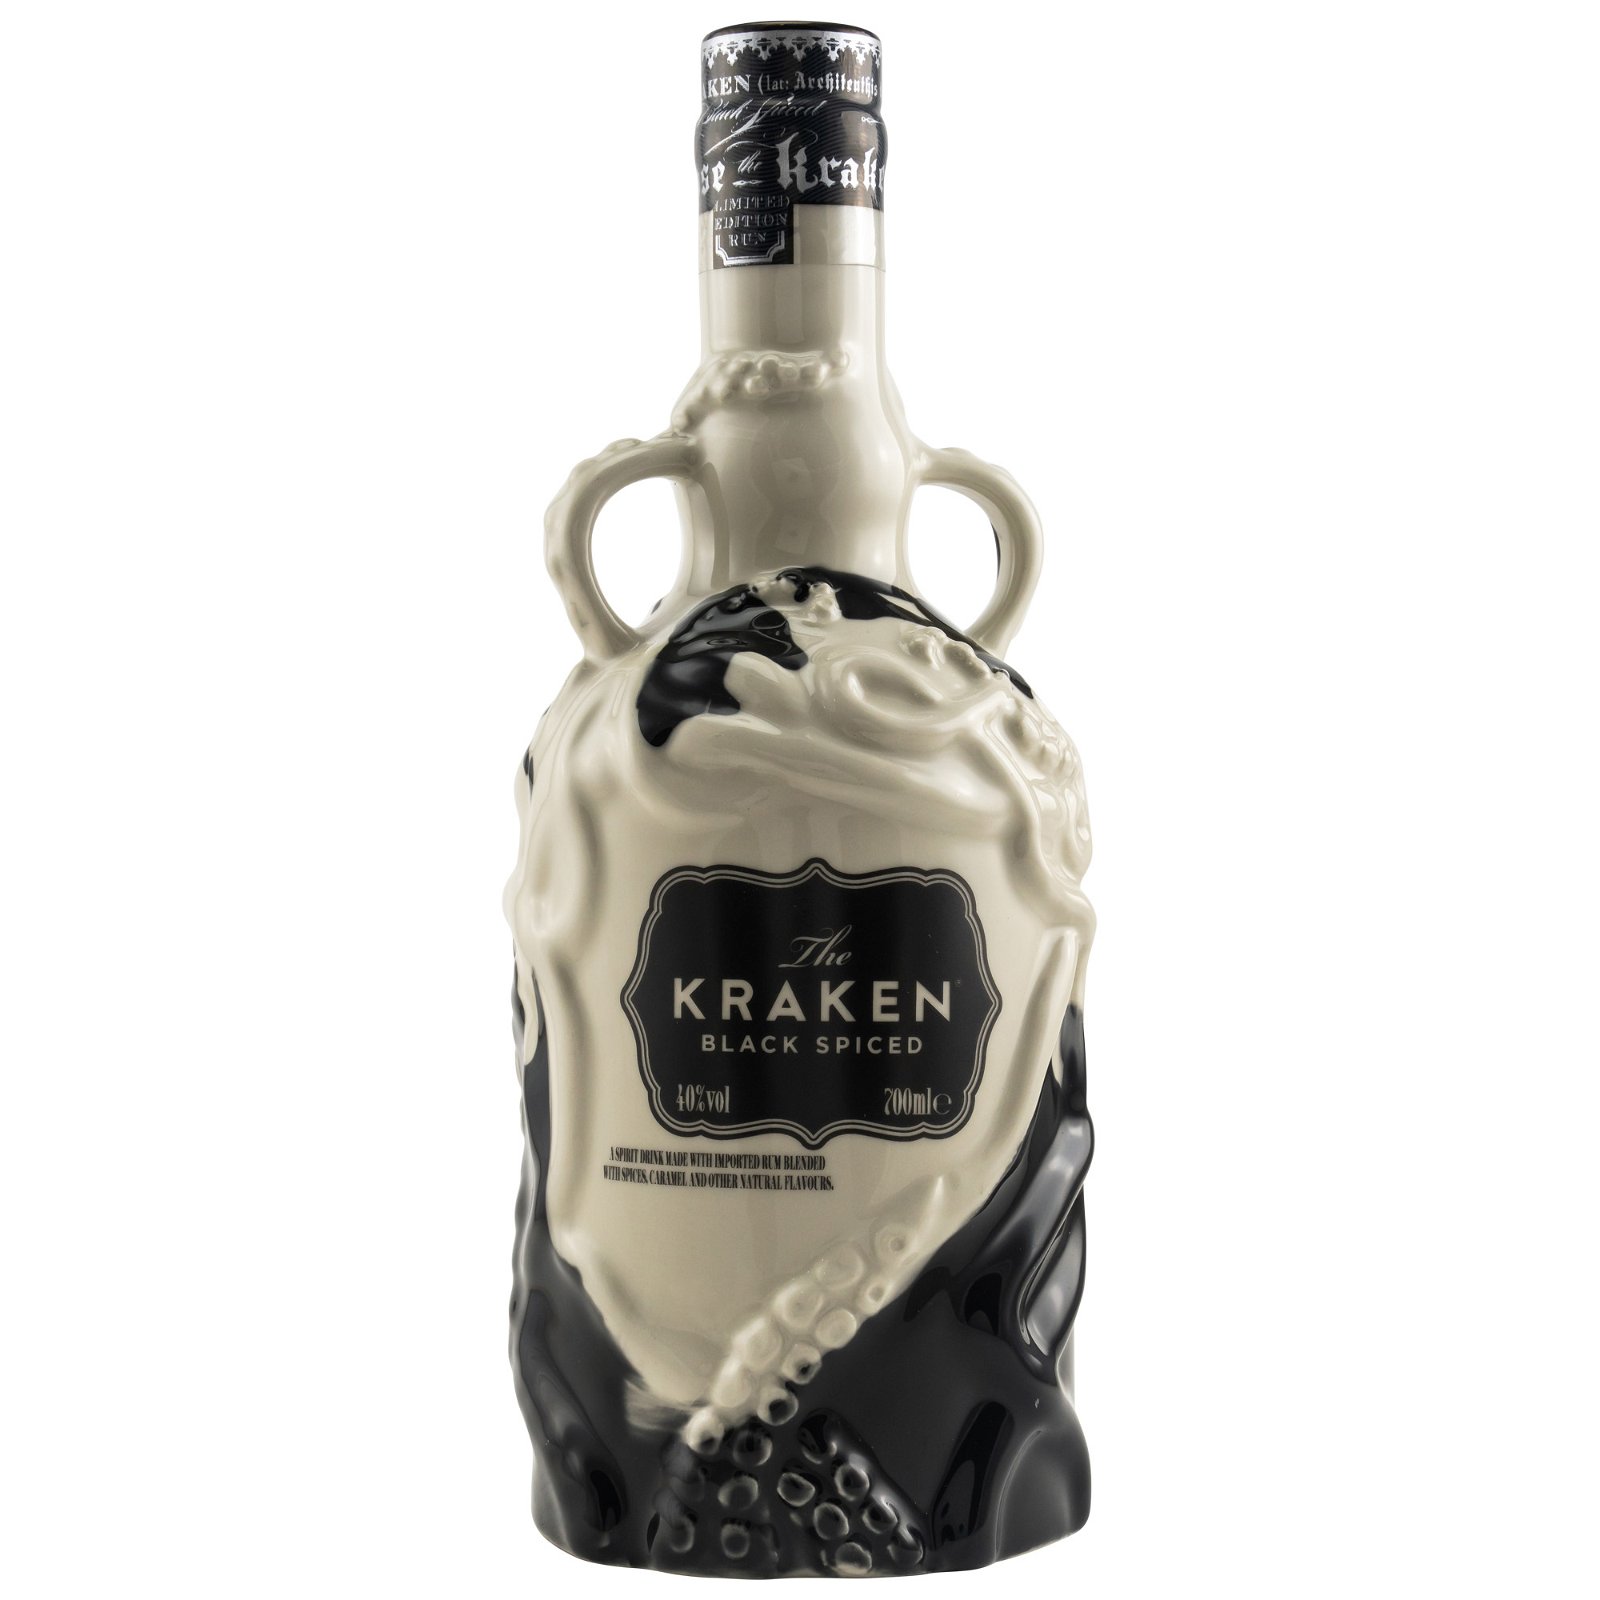 Kraken Black Spiced Ceramic Black & White Limited Edition 